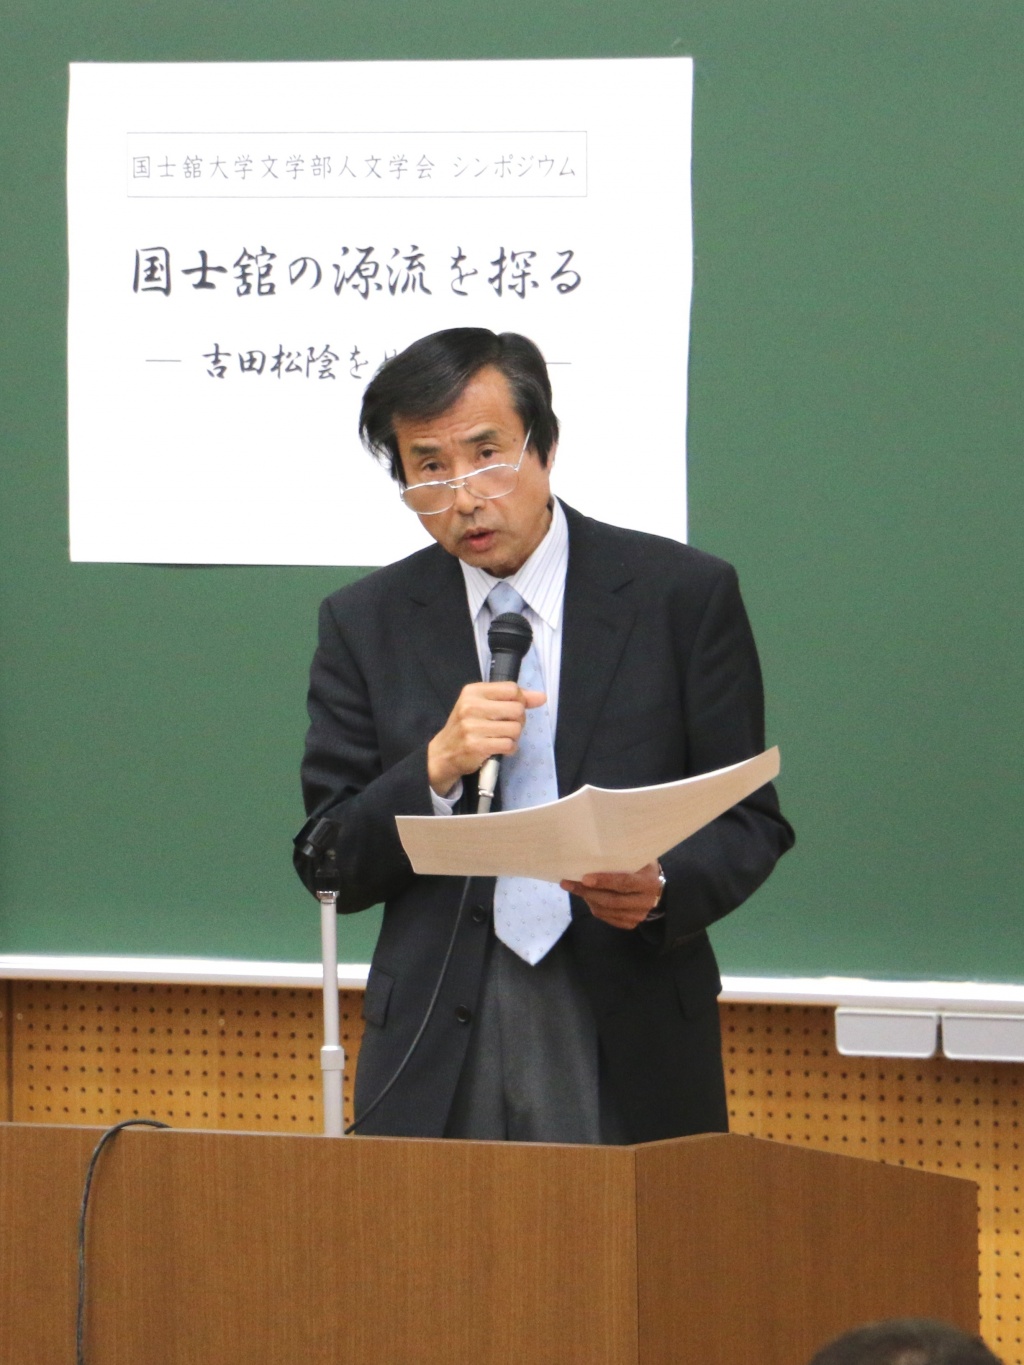 「松陰はどのようにとらえられてきたか」のテーマで近代日本の松陰像を発表した勝田政治教授